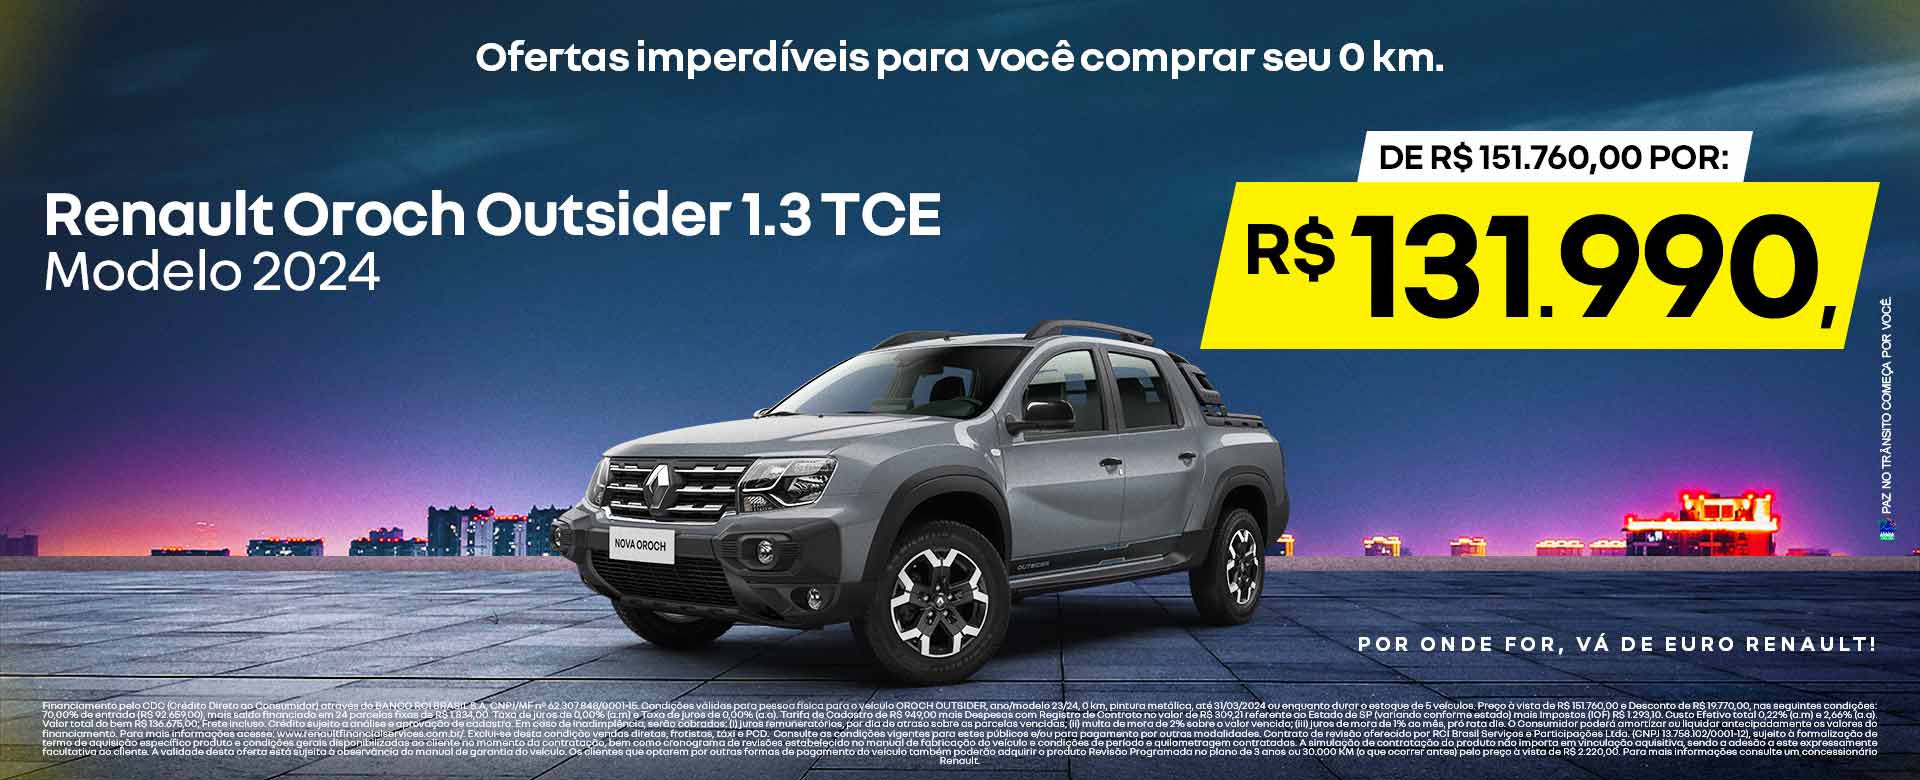 Oroch Outsider 1.3 TCE modelo 2024 - Por R$131.990 - Ribeirão Preto